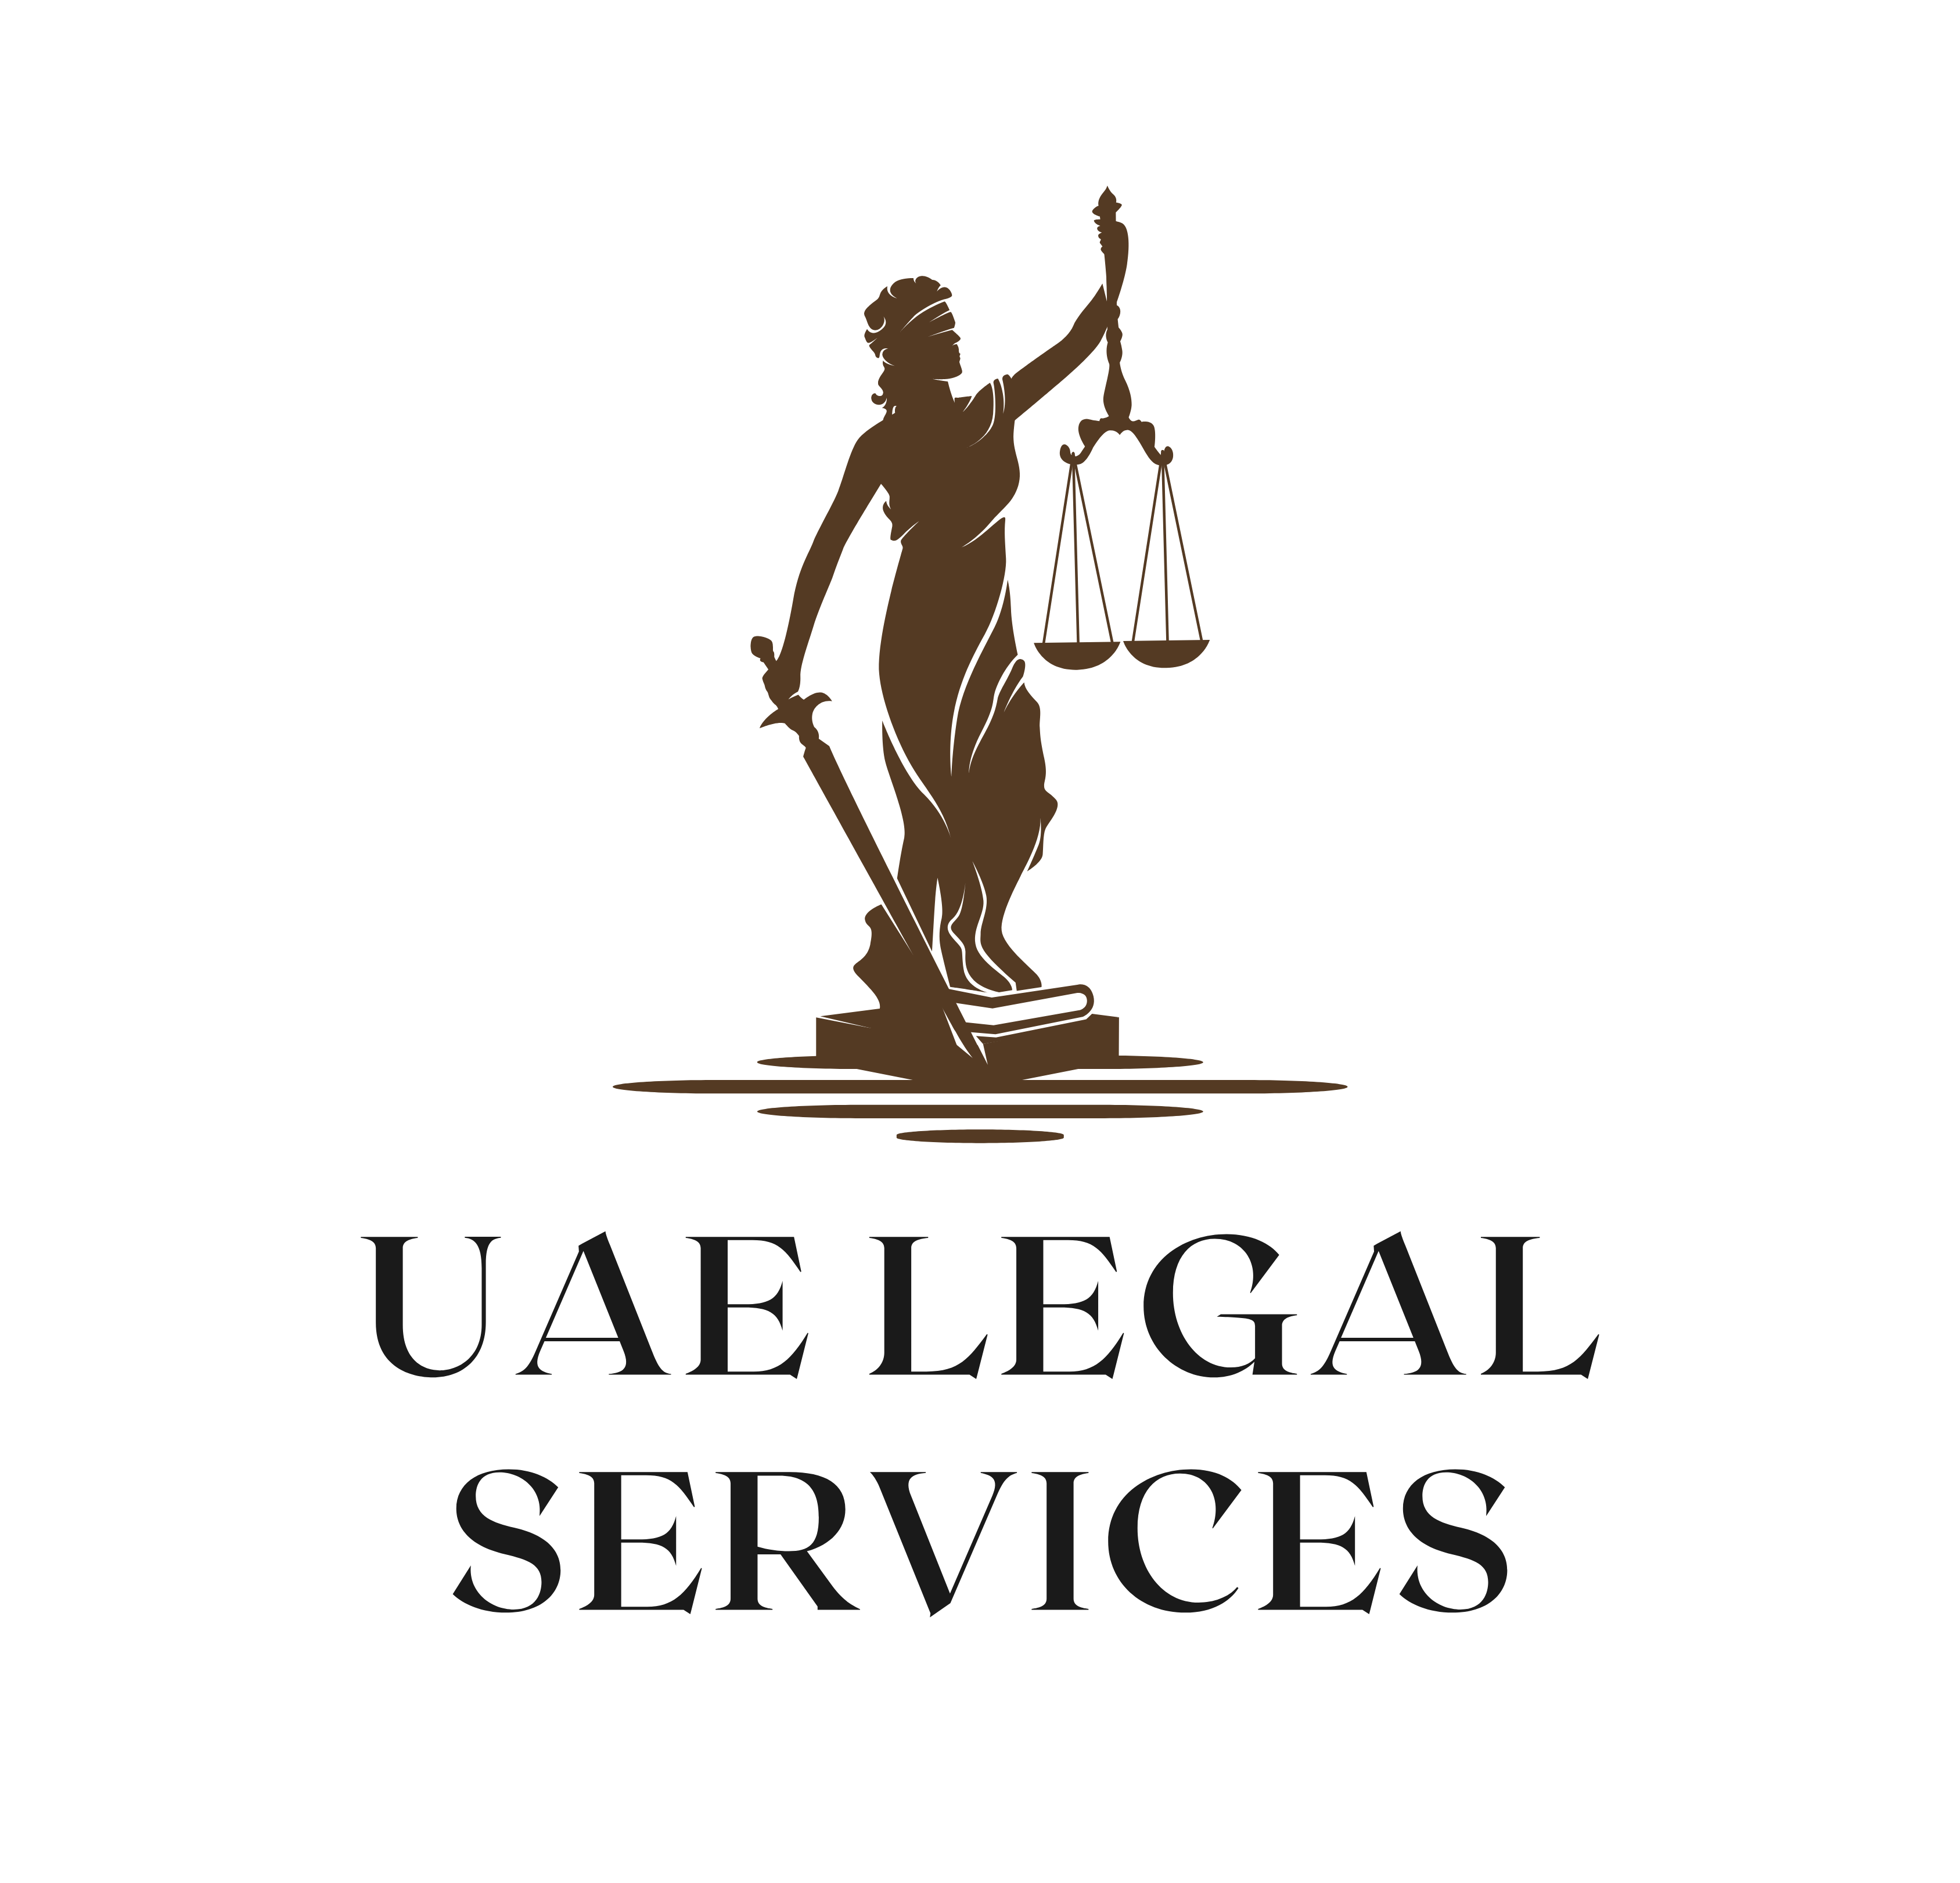  كل ما يخص الخدمات القانونية بدولة الإمارات العربية المتحدة